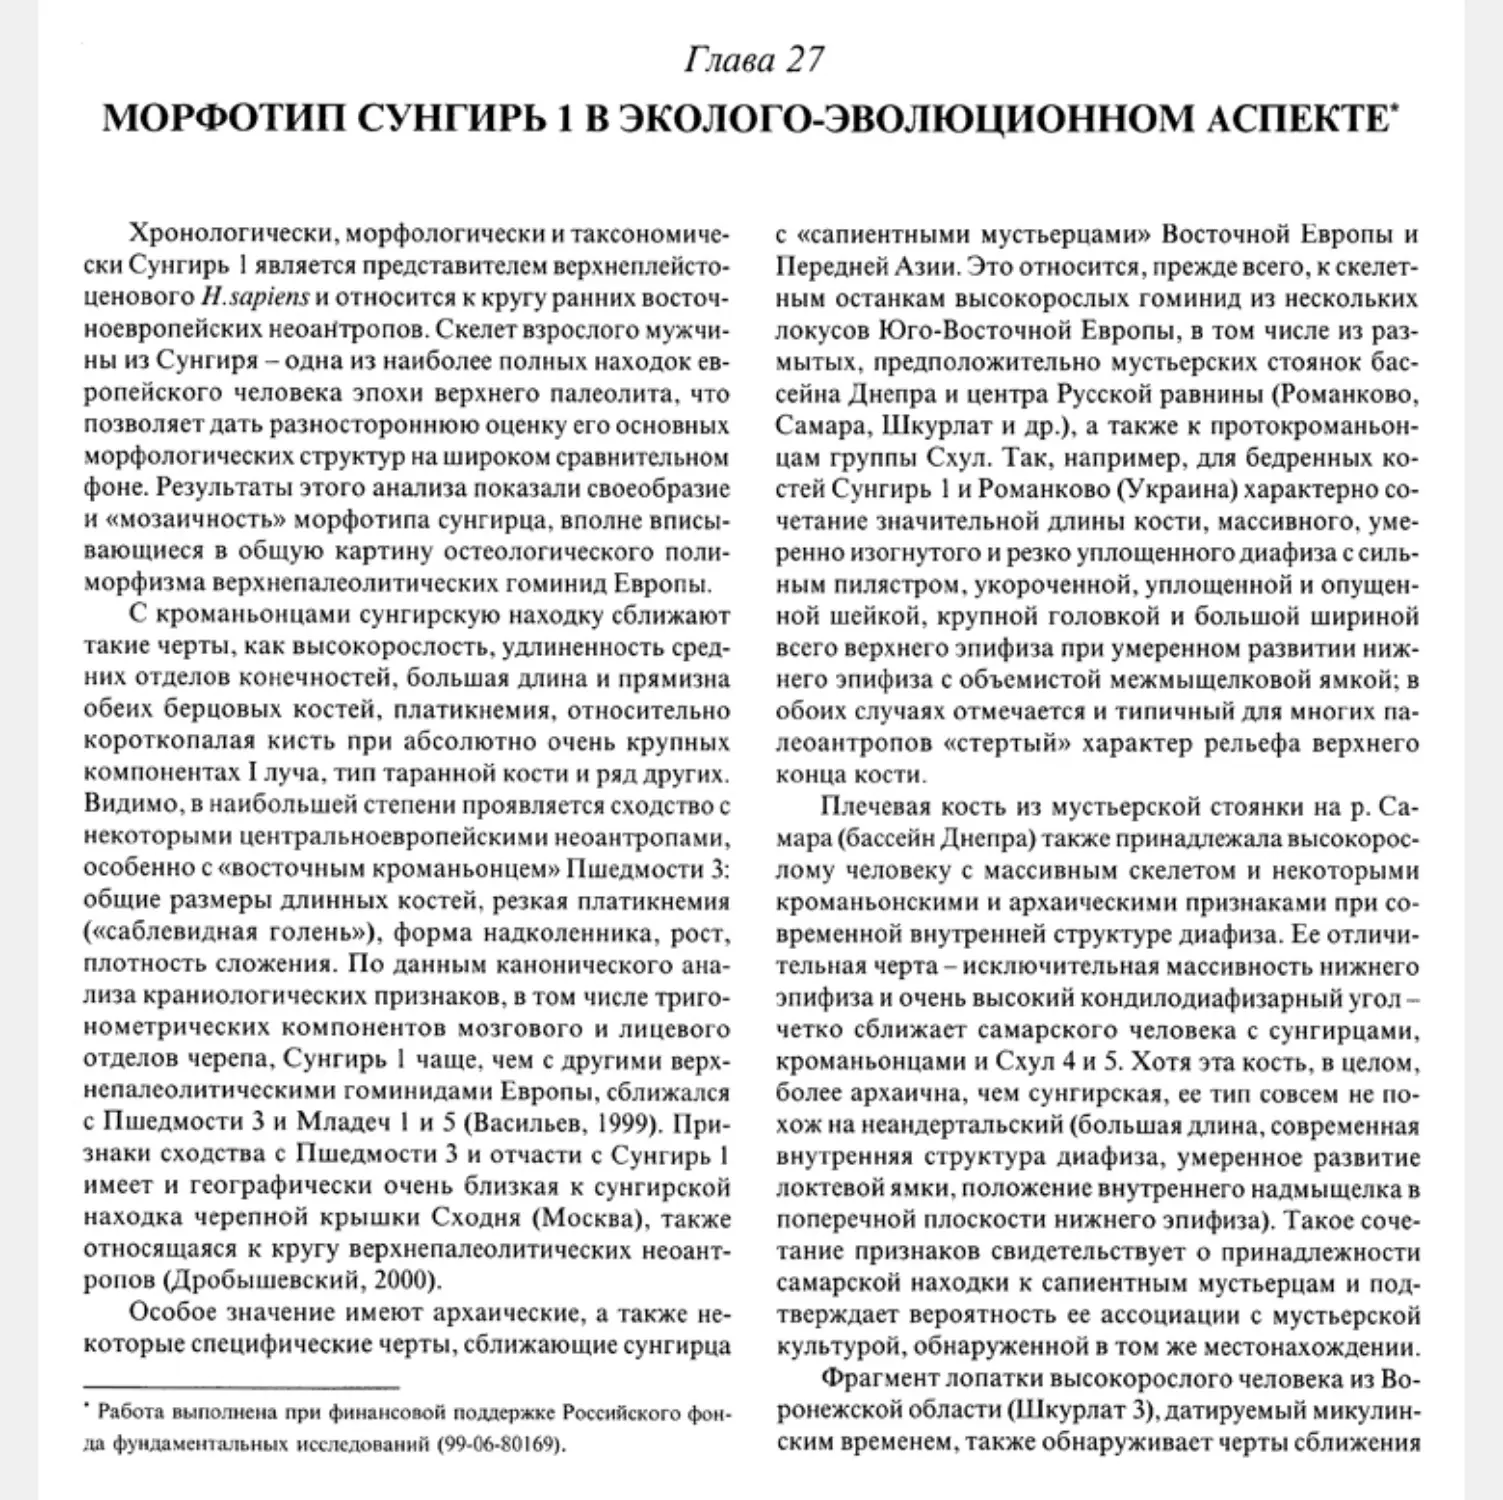 Глава 27. Морфотип Сунгирь 1 в эколого-эволюционном аспекте. Е.Н. Хрисанфова